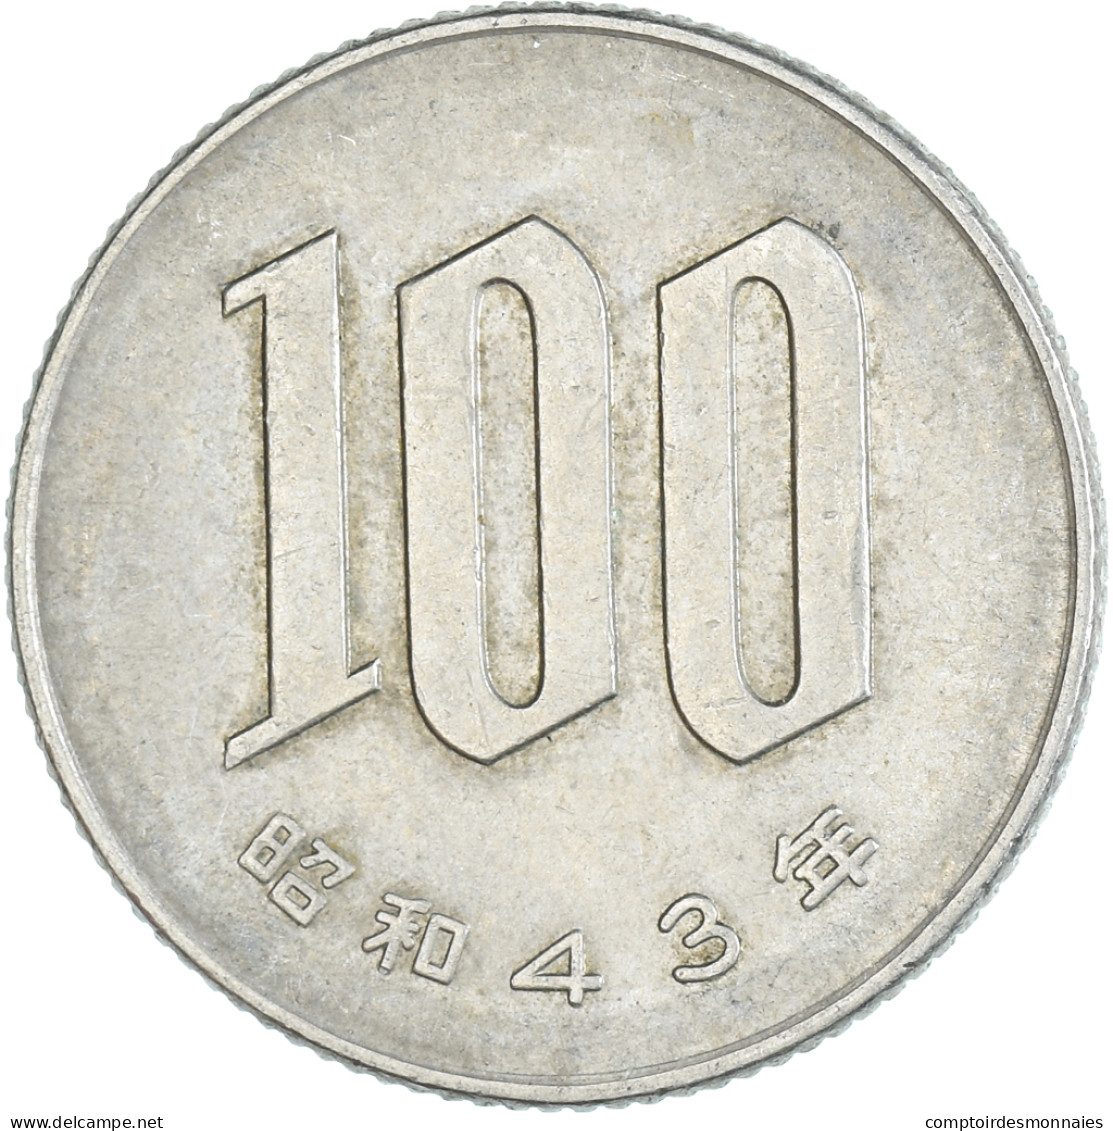 Monnaie, Japon, 100 Yen, 1968 - Japon